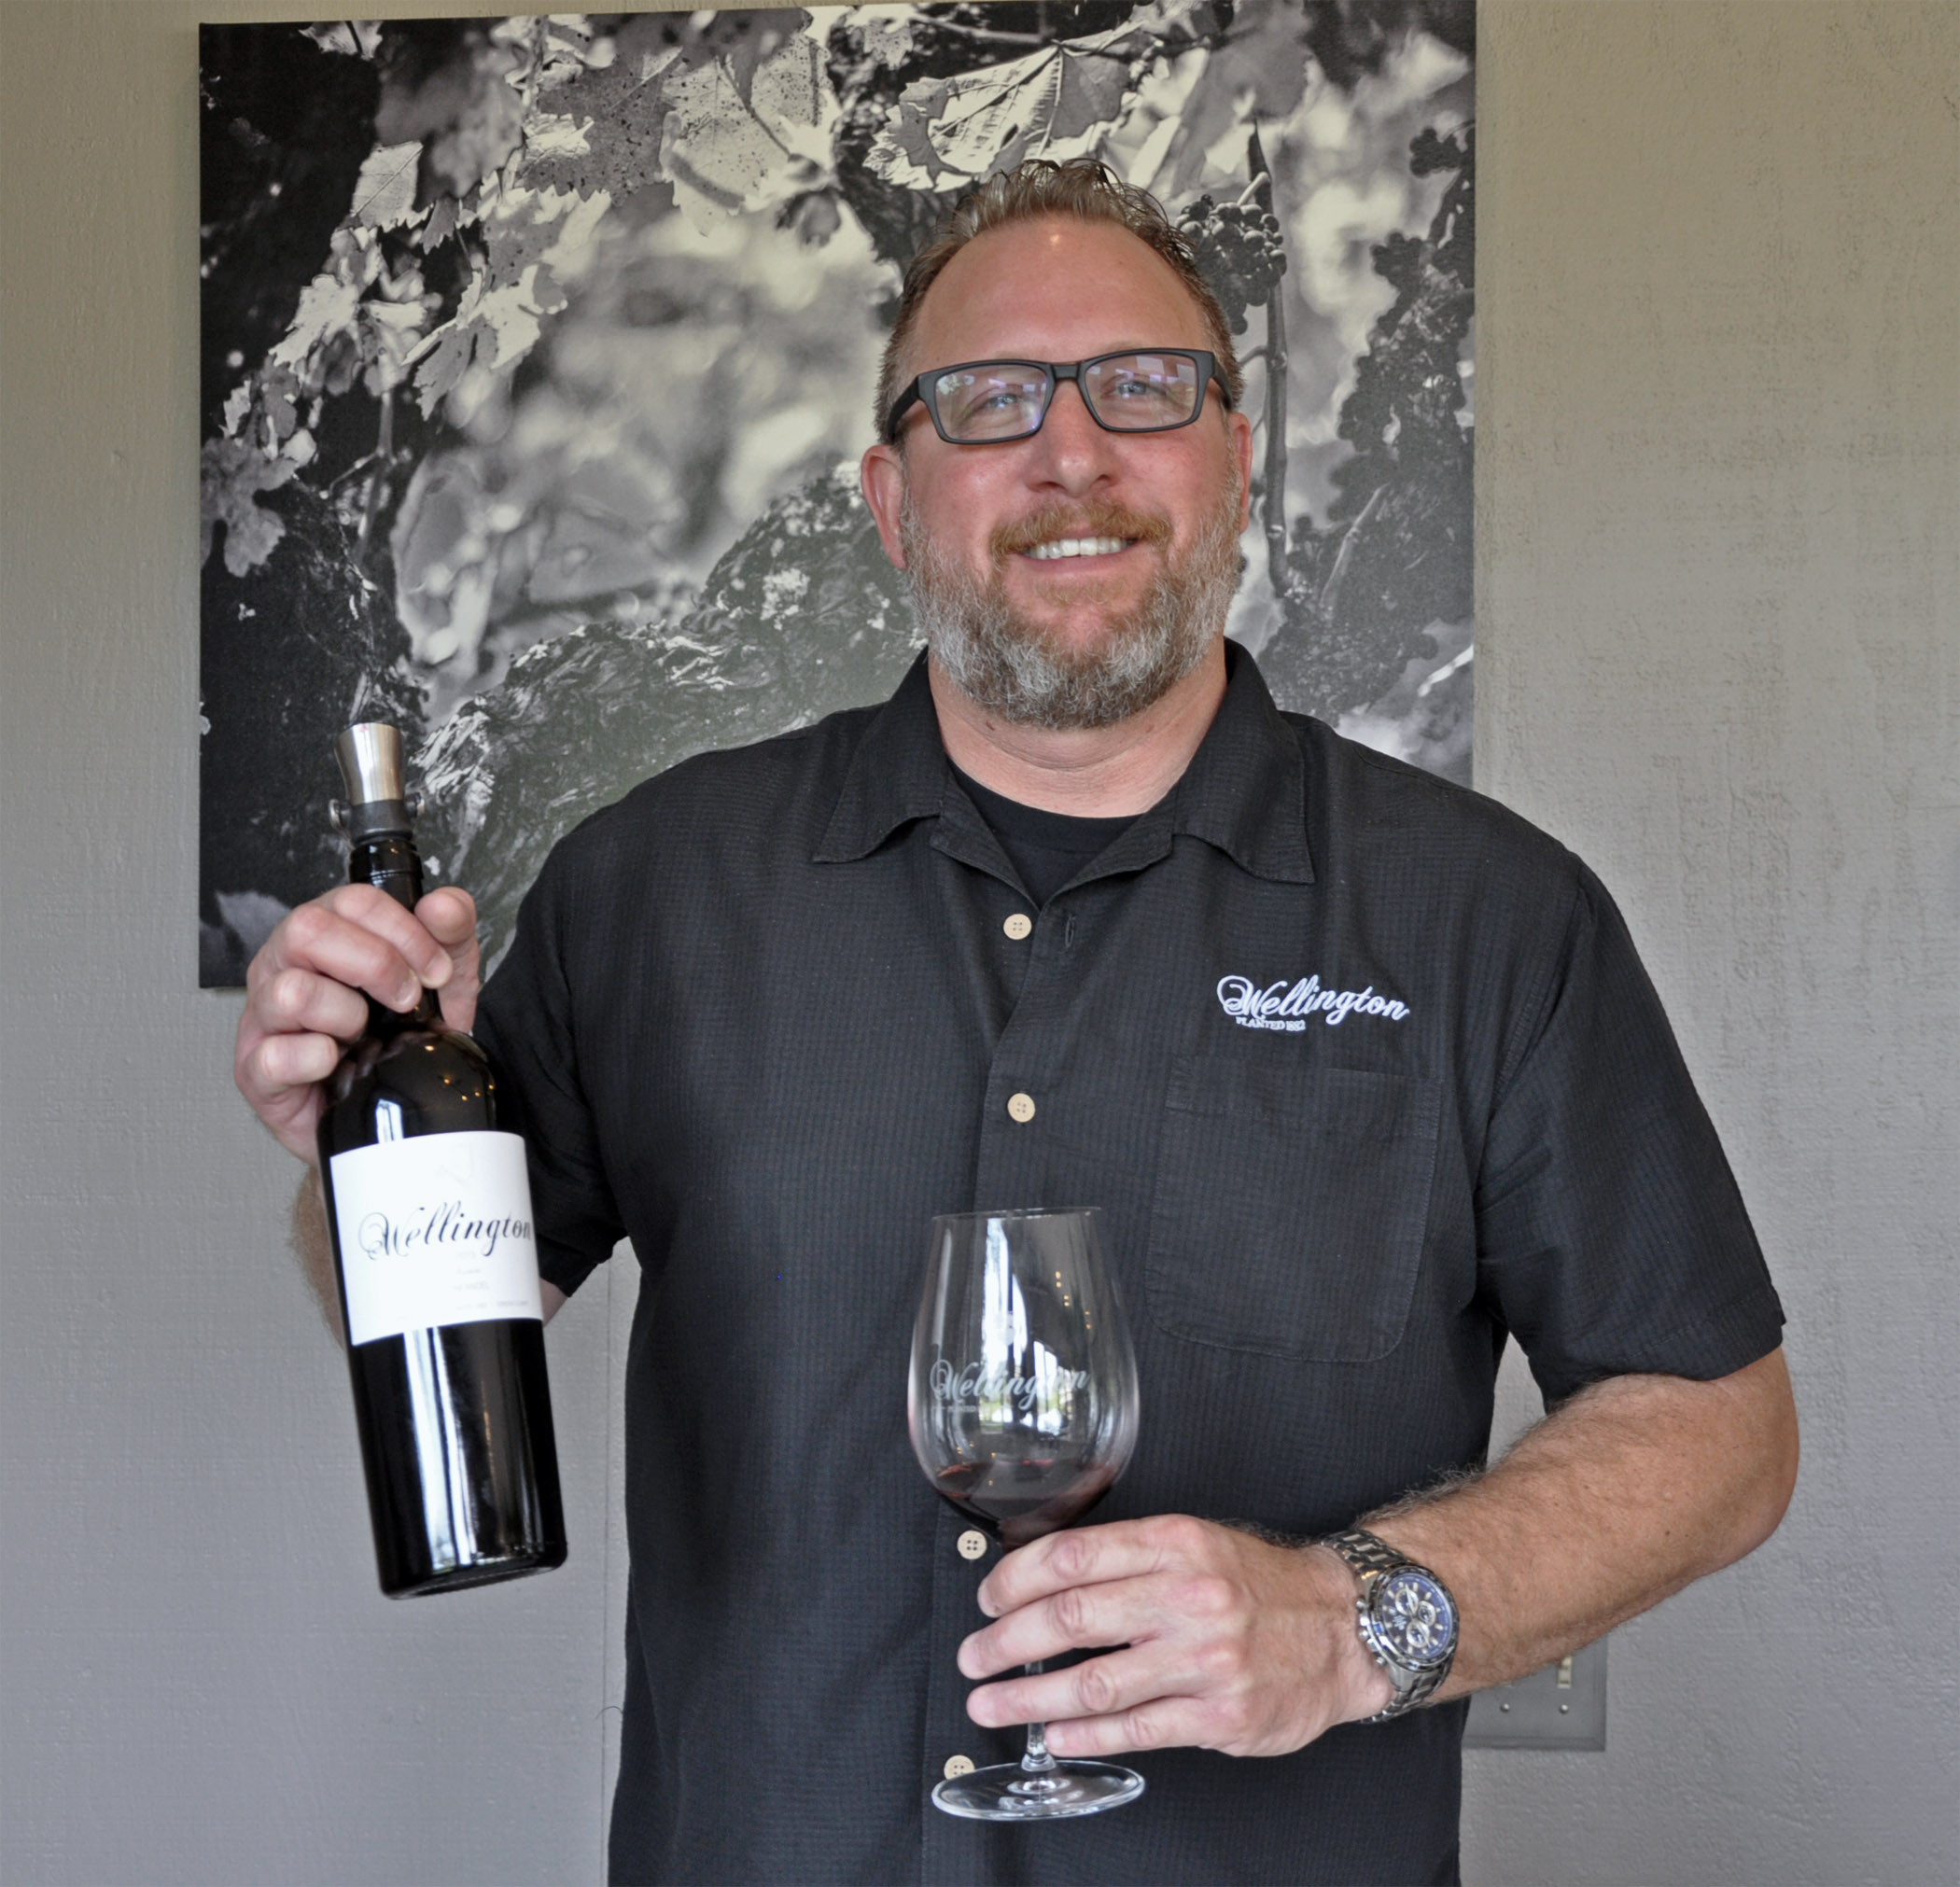 7. Wellington wine educator